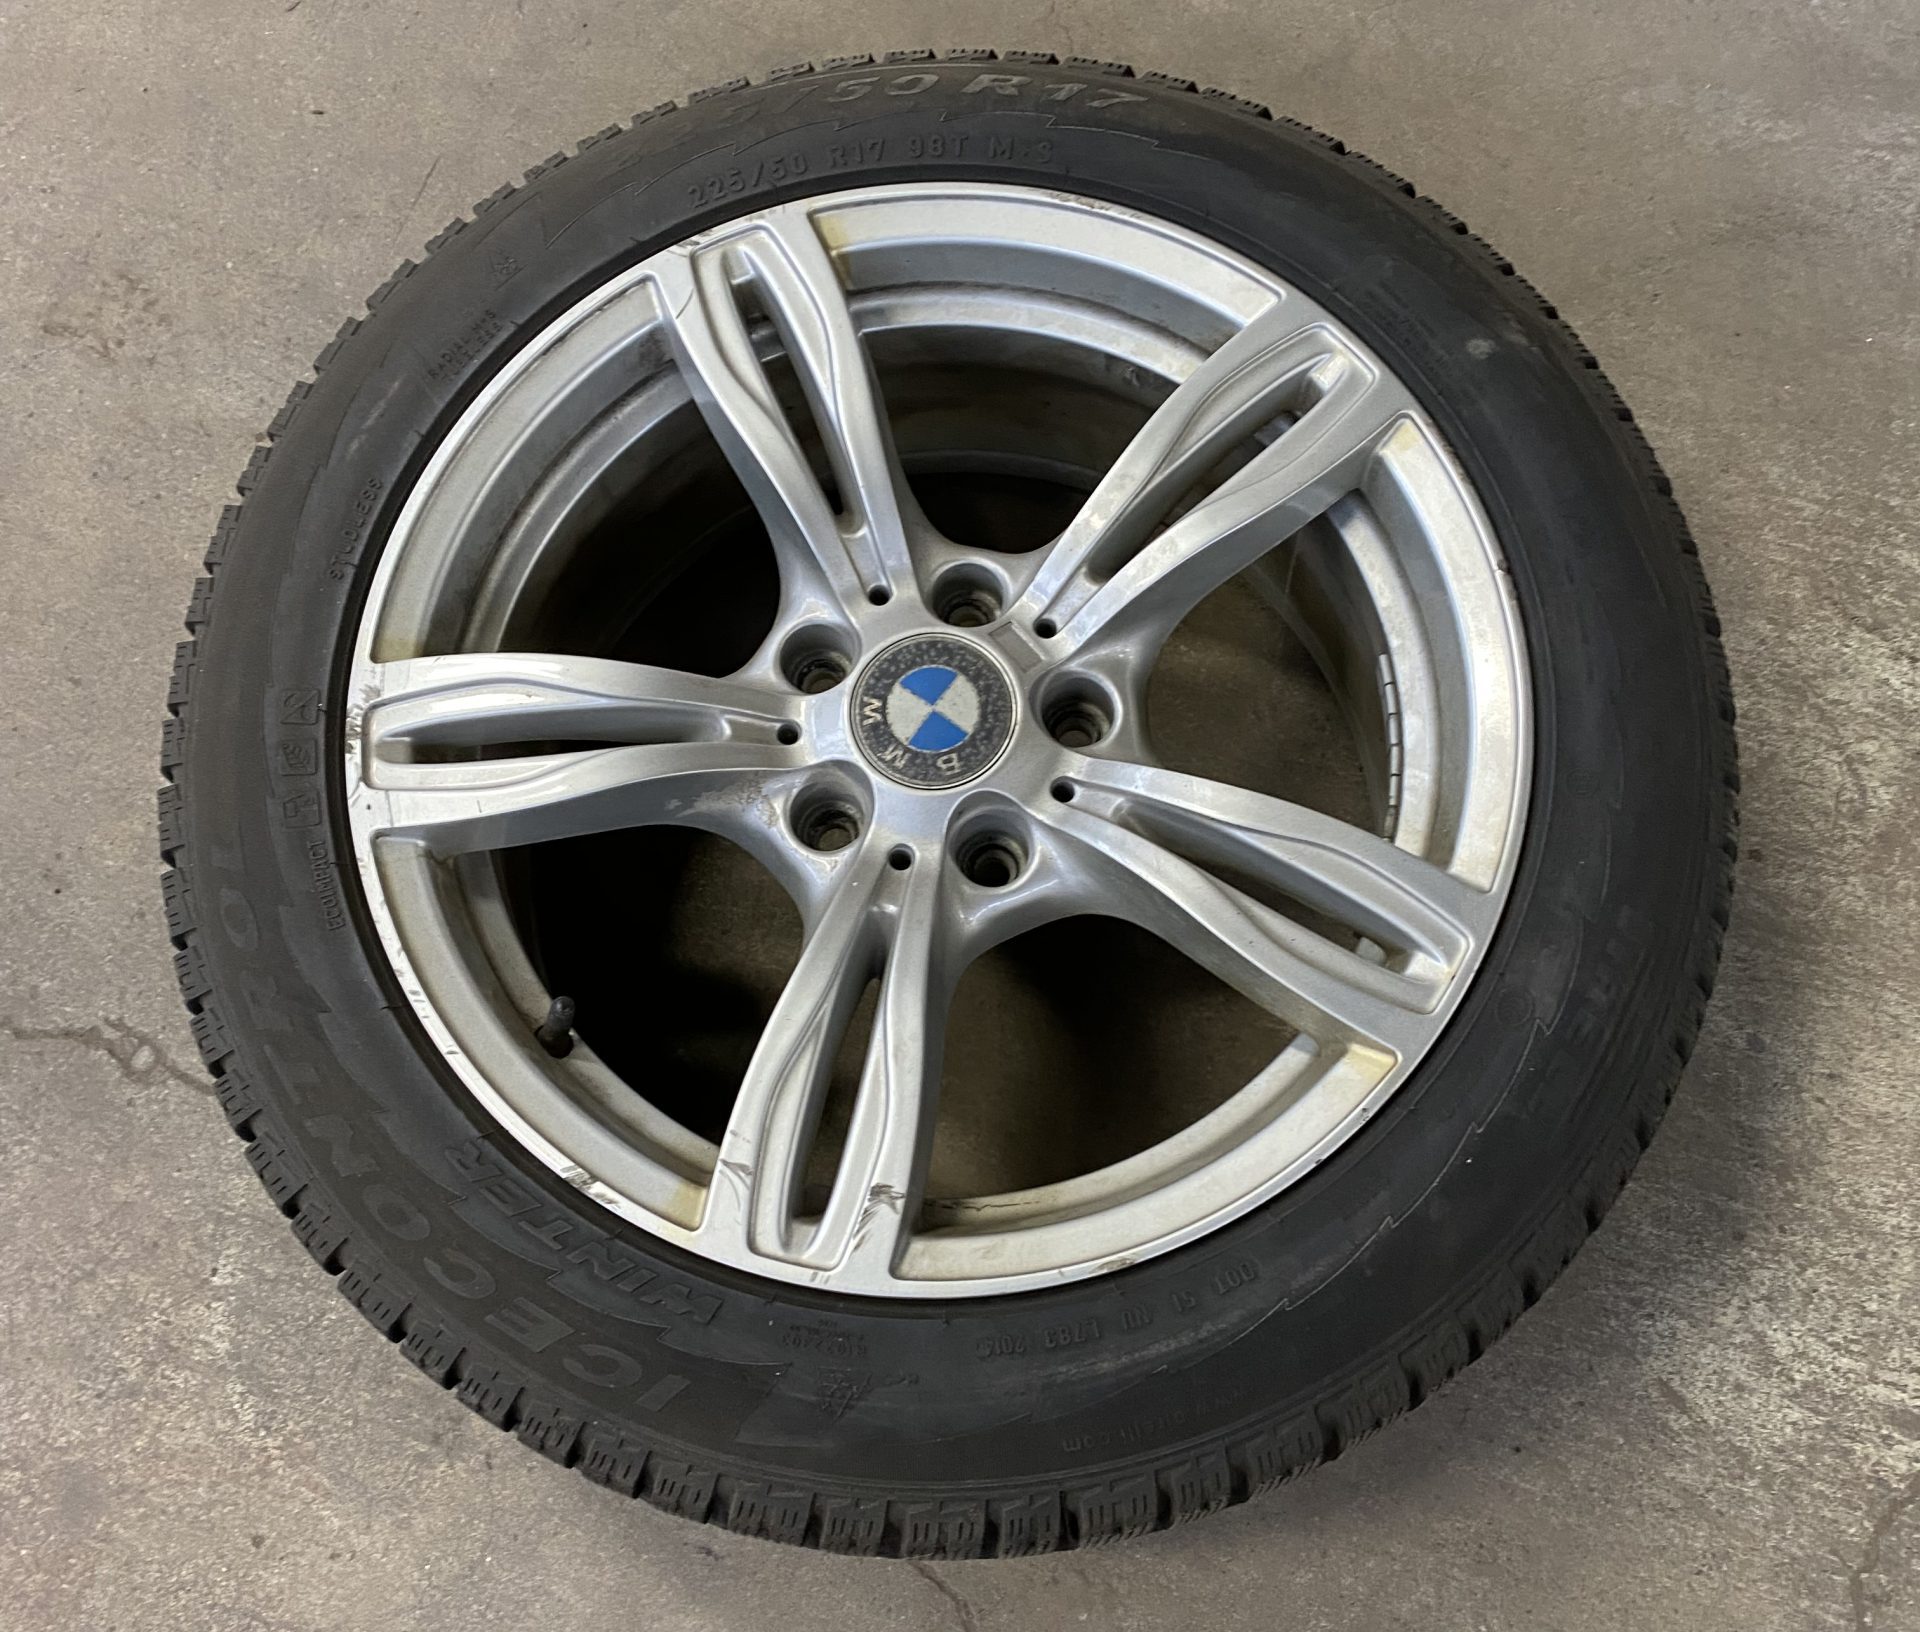 BMW Wheels & 225/50R17 Pirelli Winters: